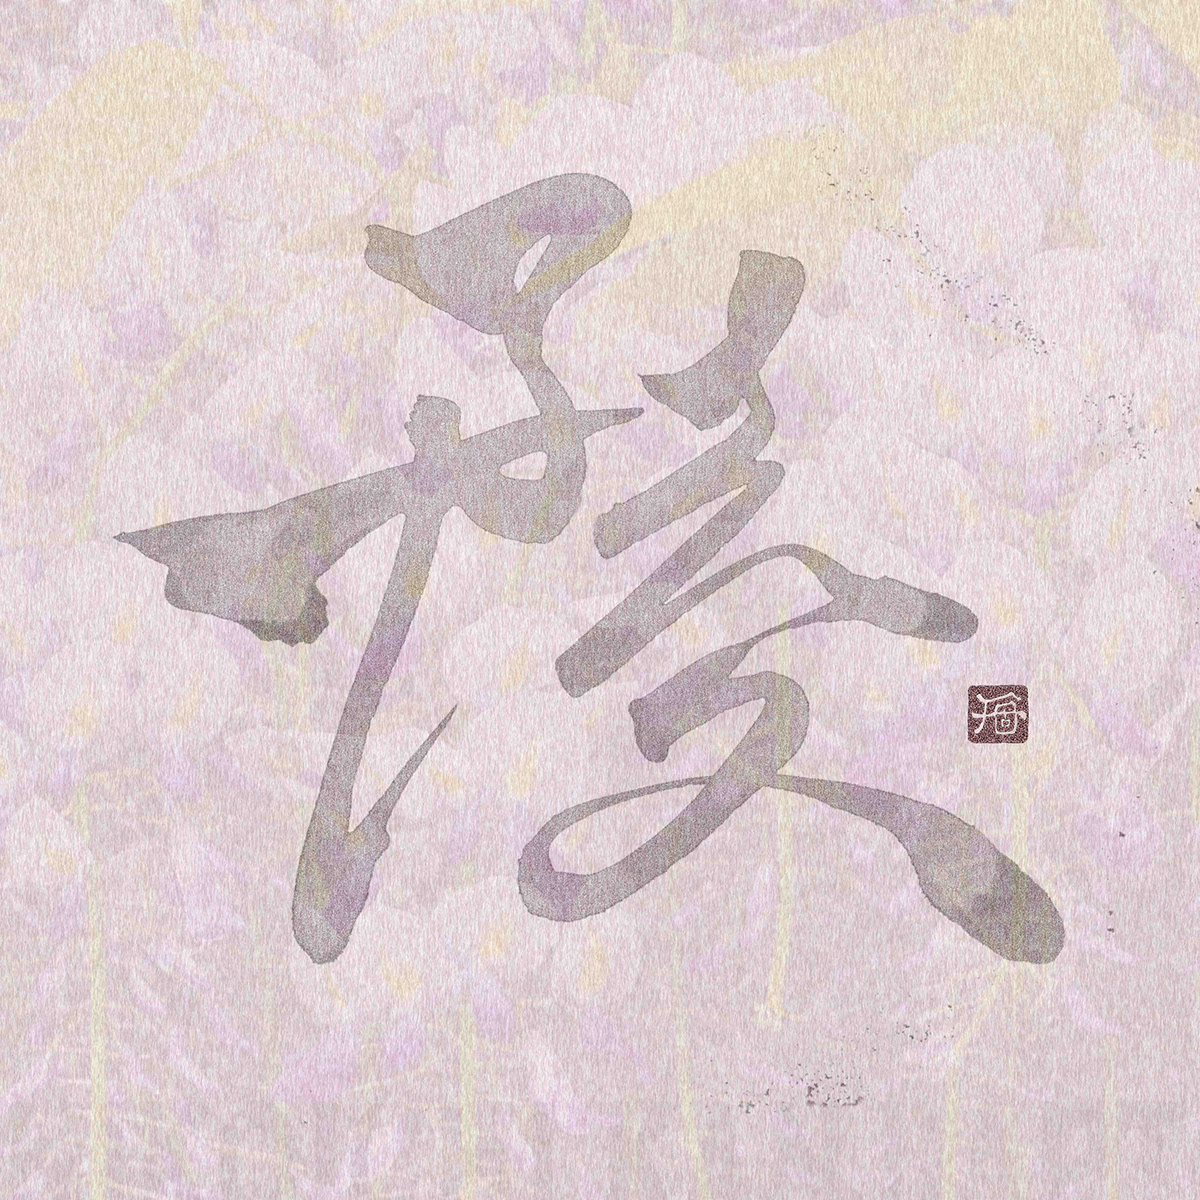 Shodo Calligraphy   kanji kanji art nft japanese art japanese style 色情  초현실주의  